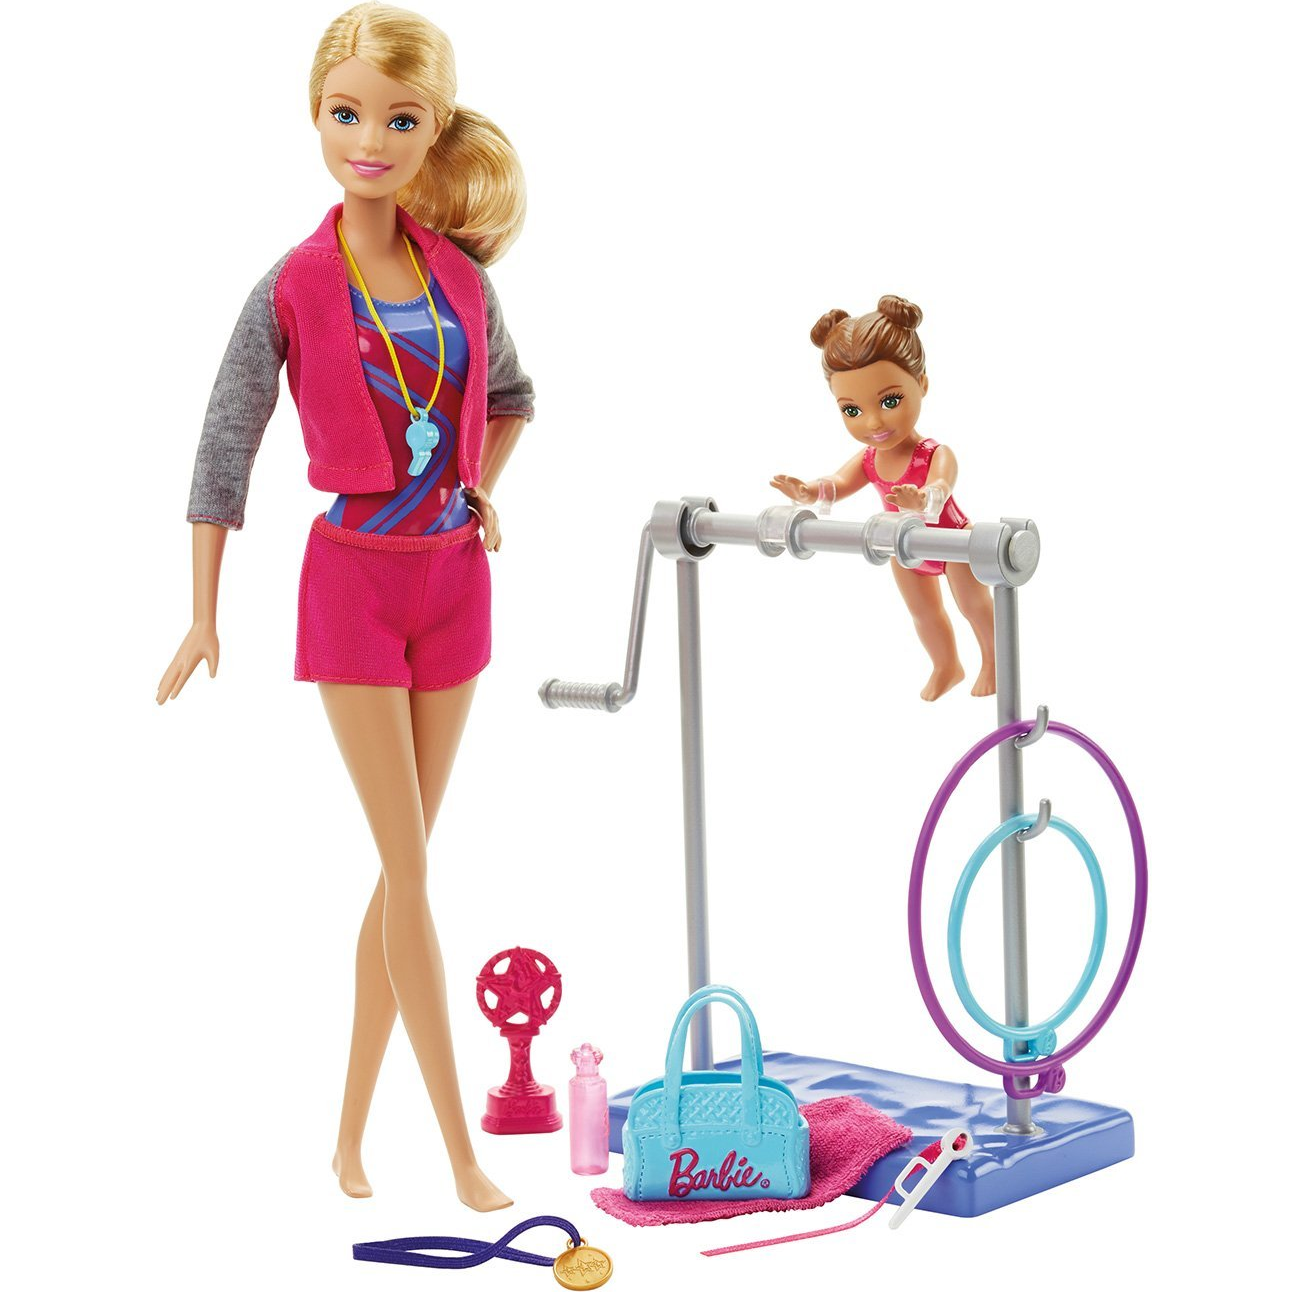 Barbie Gynmastic Coach Dolls & Playset Only $14.99! (Reg $19.99)